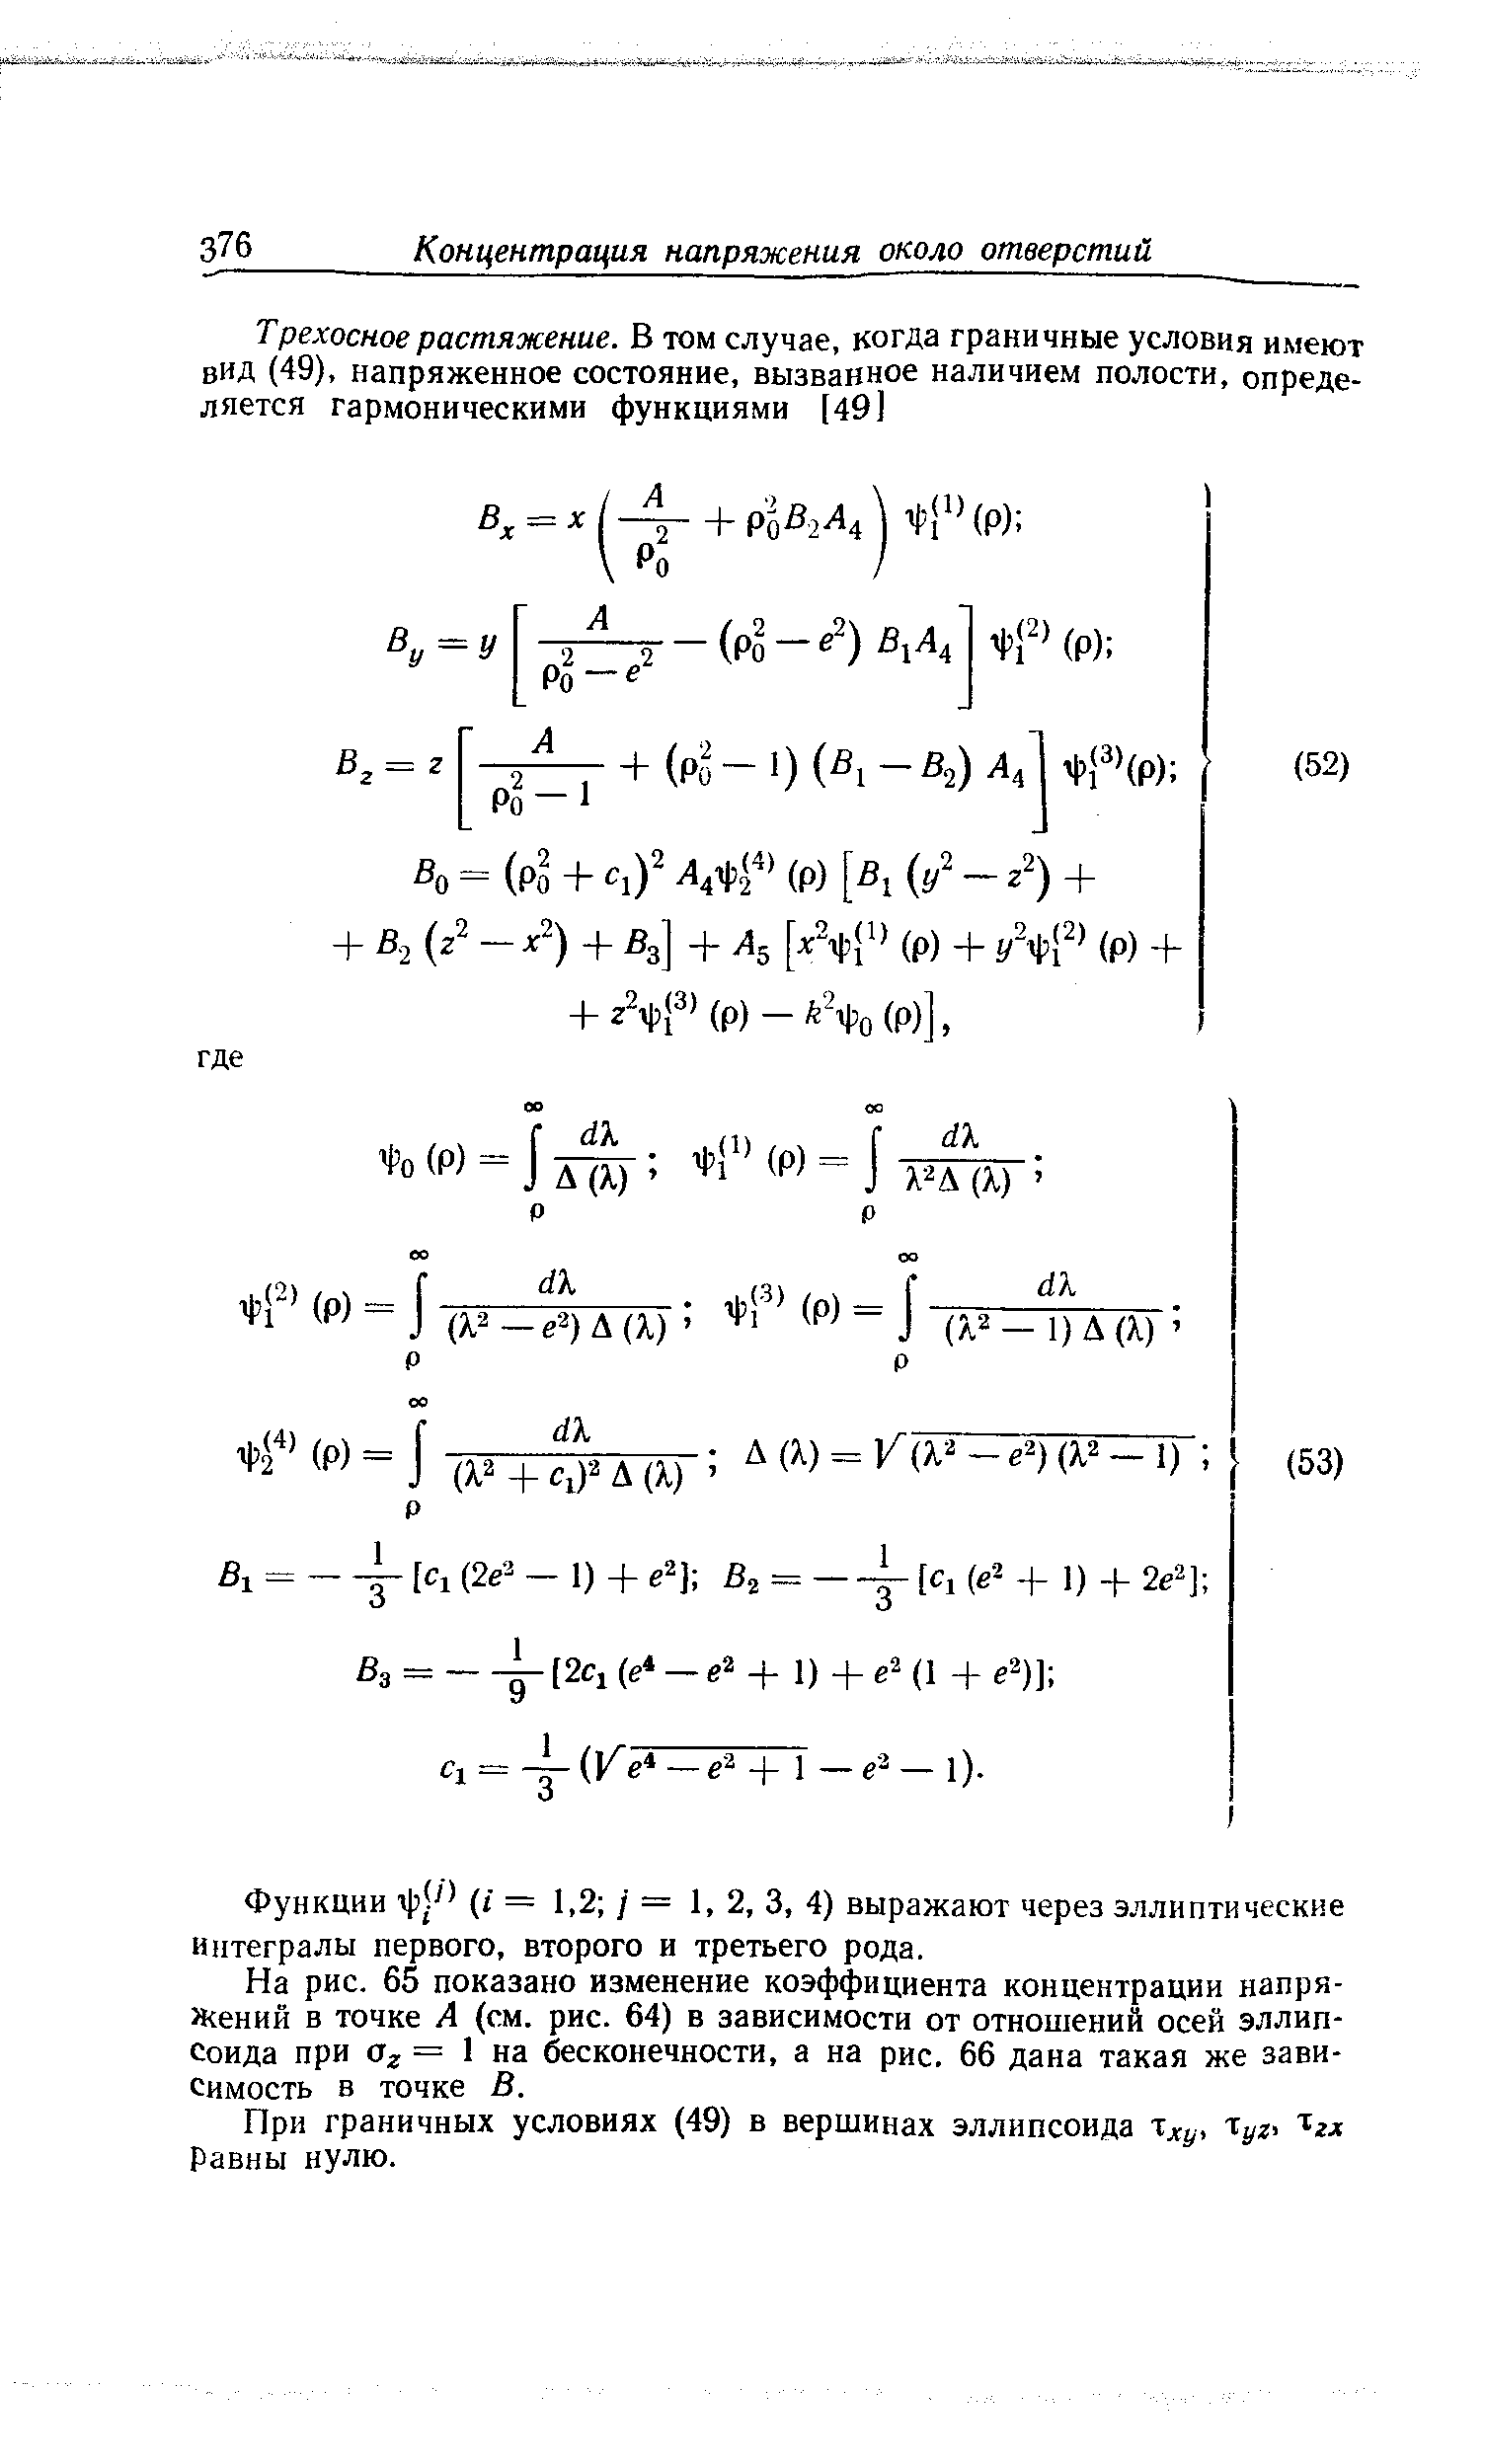 Функции (/ = 1,2 / = 1, 2, 3, 4) выражают через эллиптические интегралы первого, второго и третьего рода.
